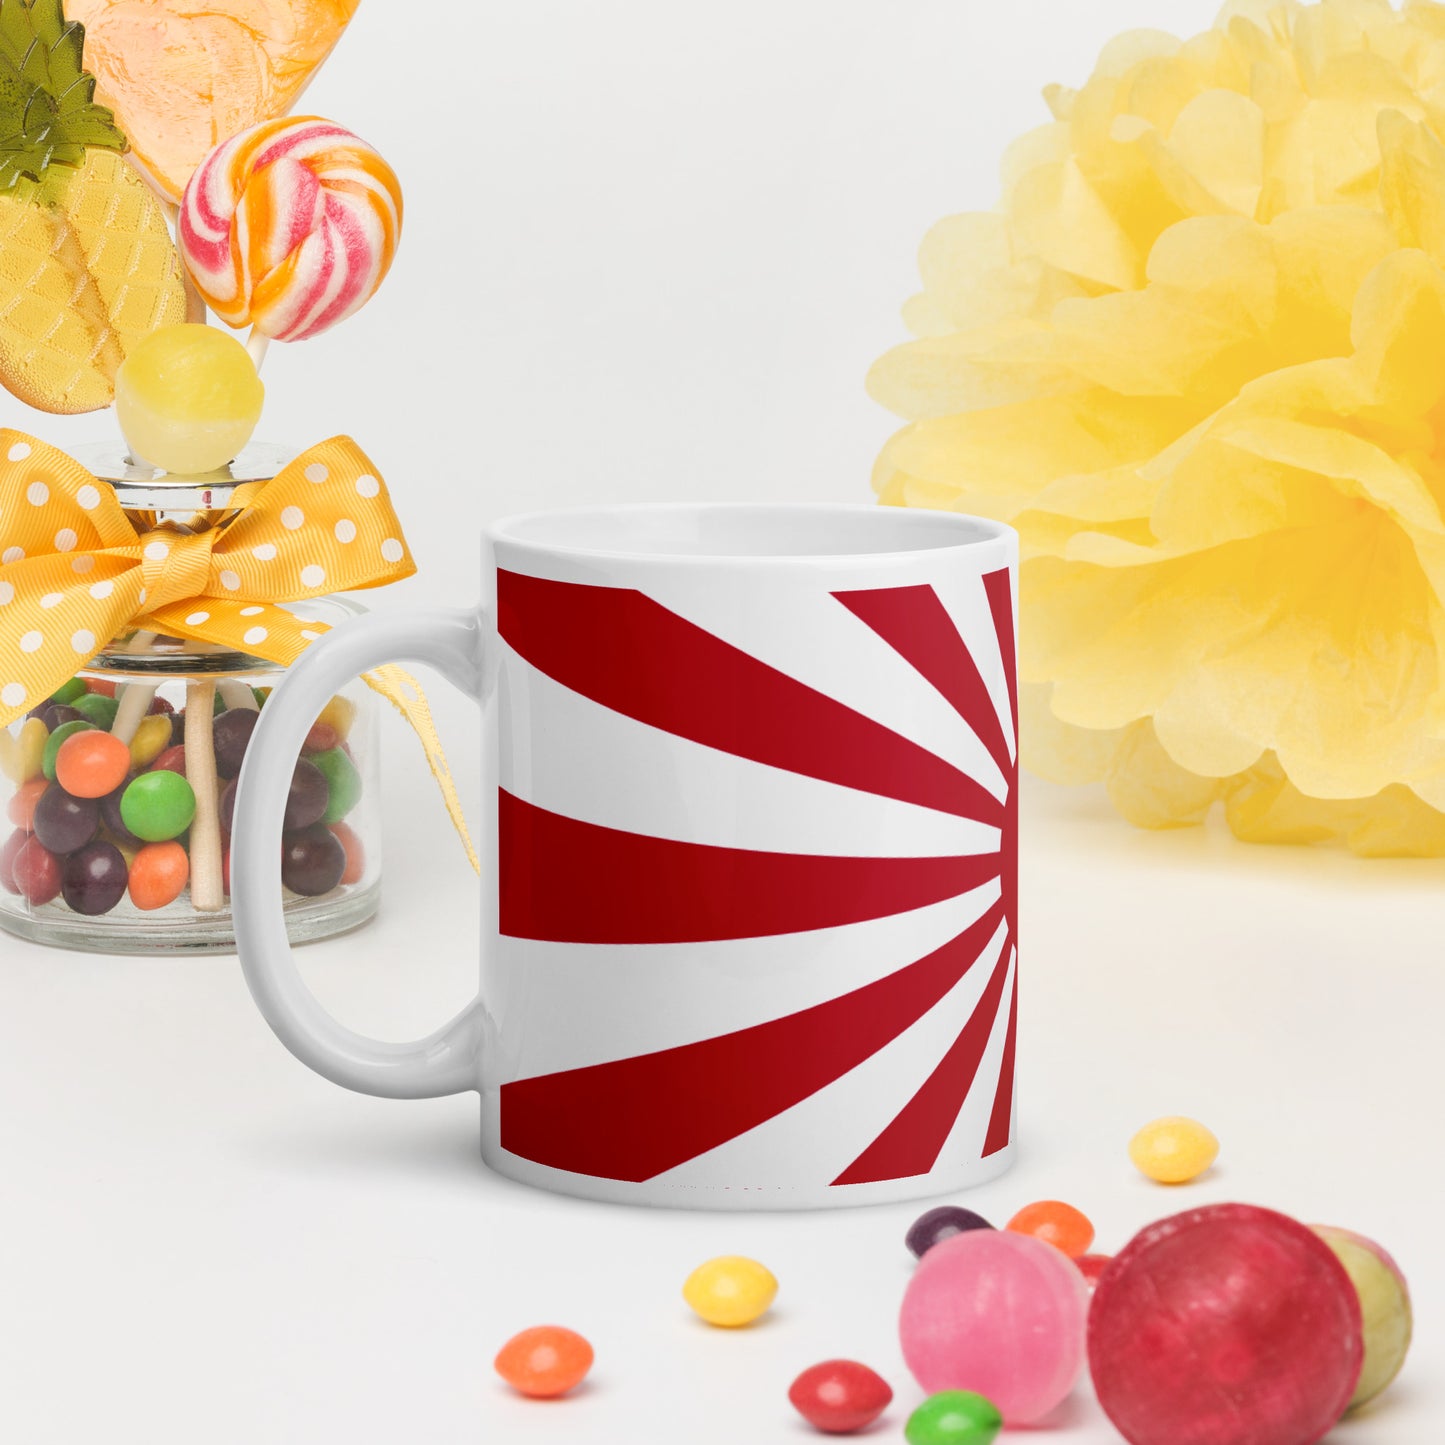 White glossy mug "SUNRISE" produced by HINOMARU-HONPO